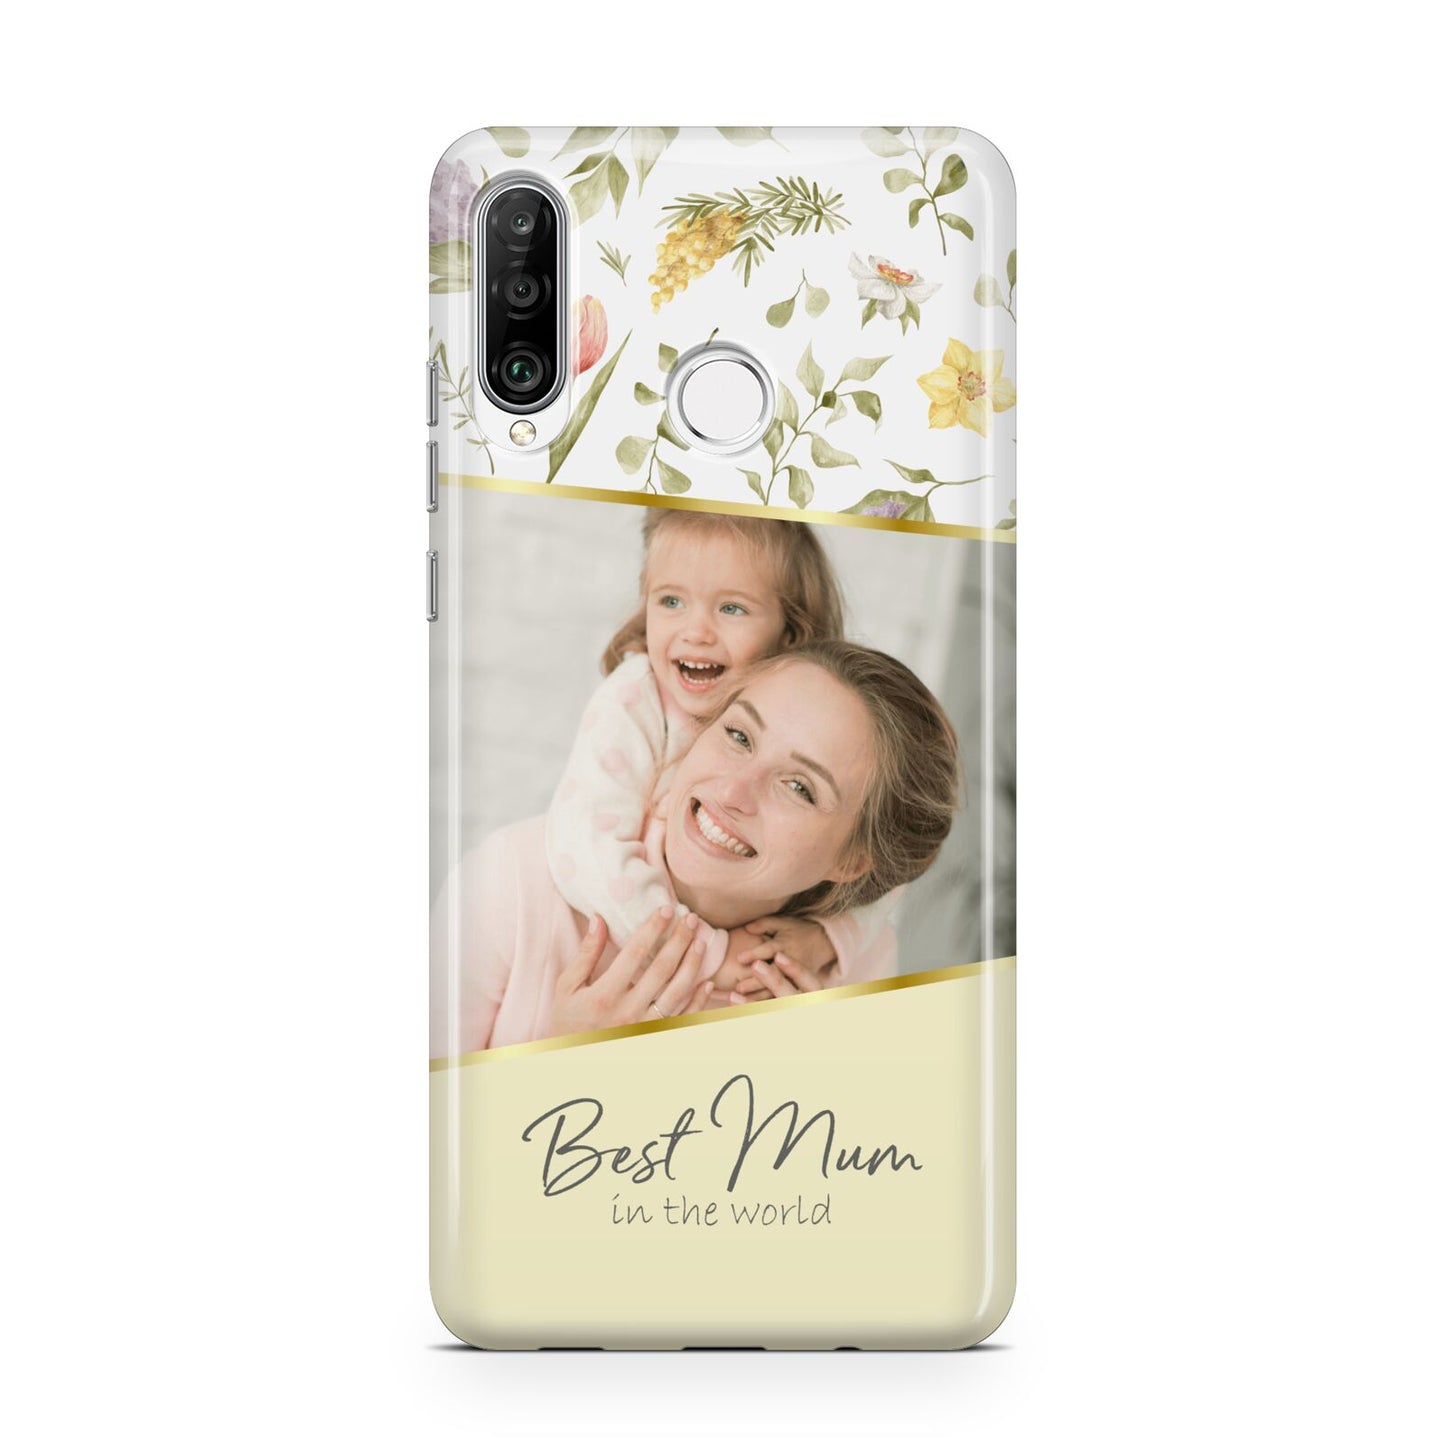 Personalised Best Mum Huawei P30 Lite Phone Case